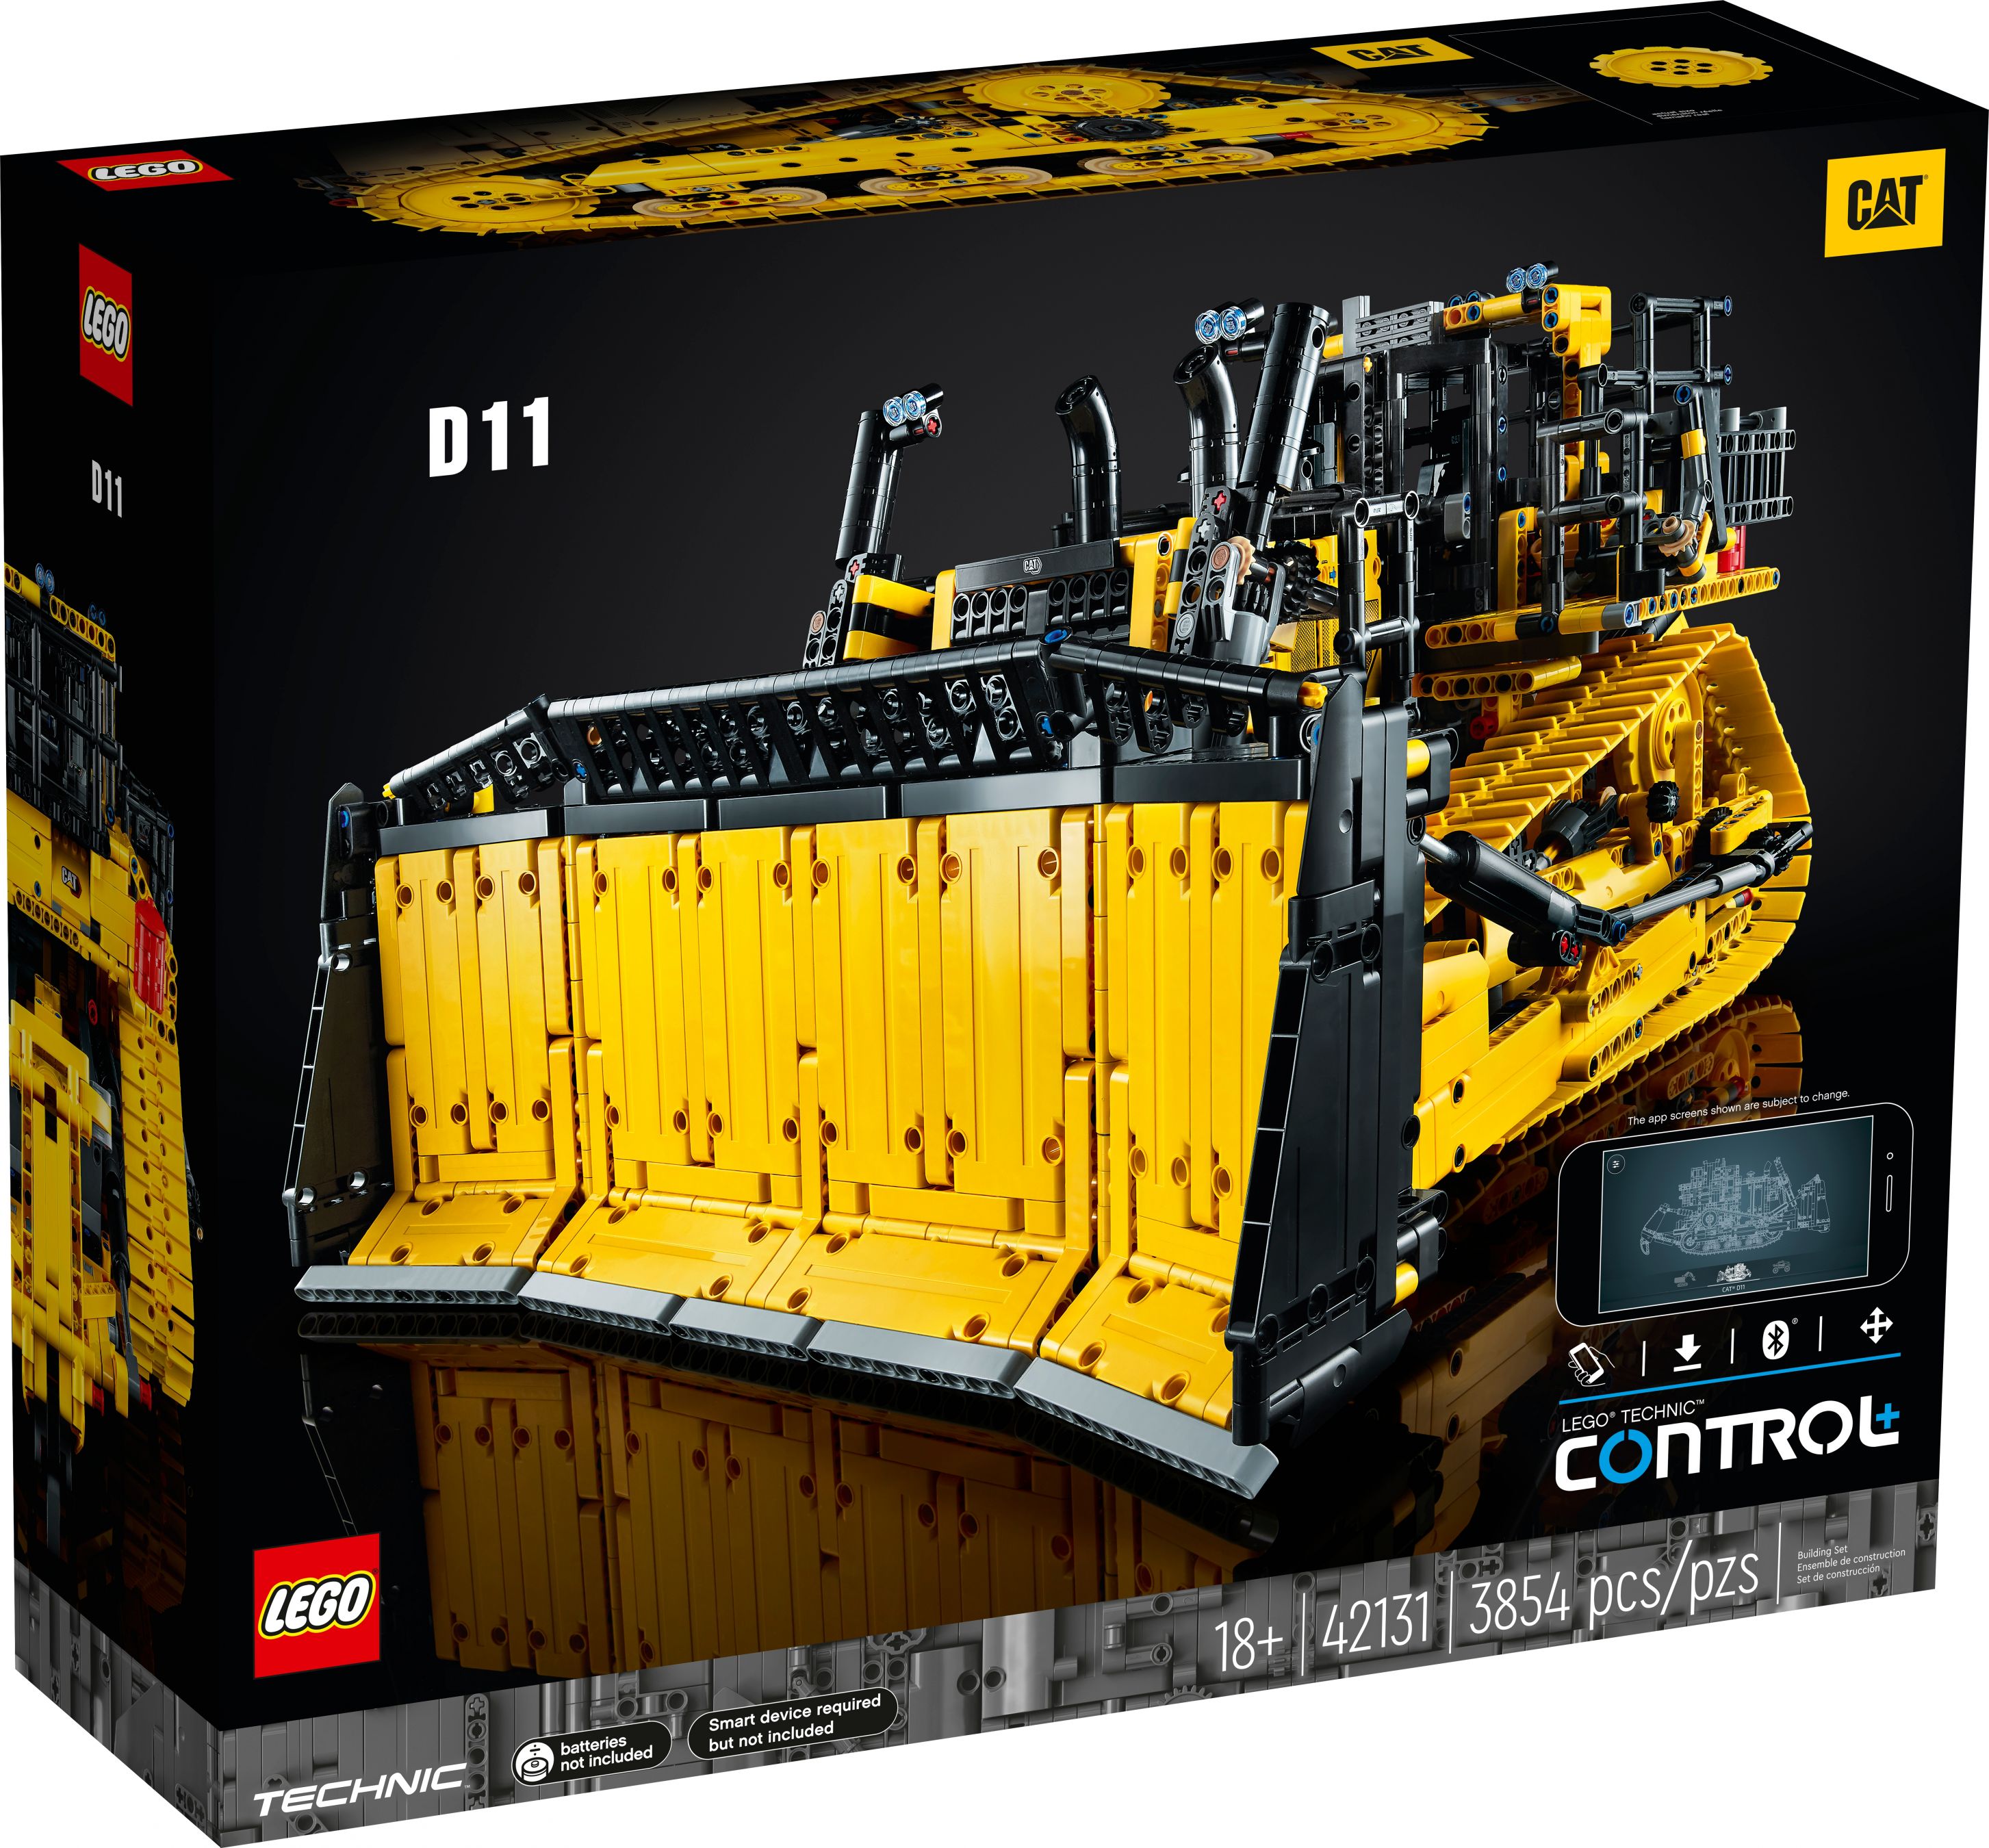 LEGO Technic 42131 Appgesteuerter Cat® D11 Bulldozer LEGO_42131_alt1.jpg